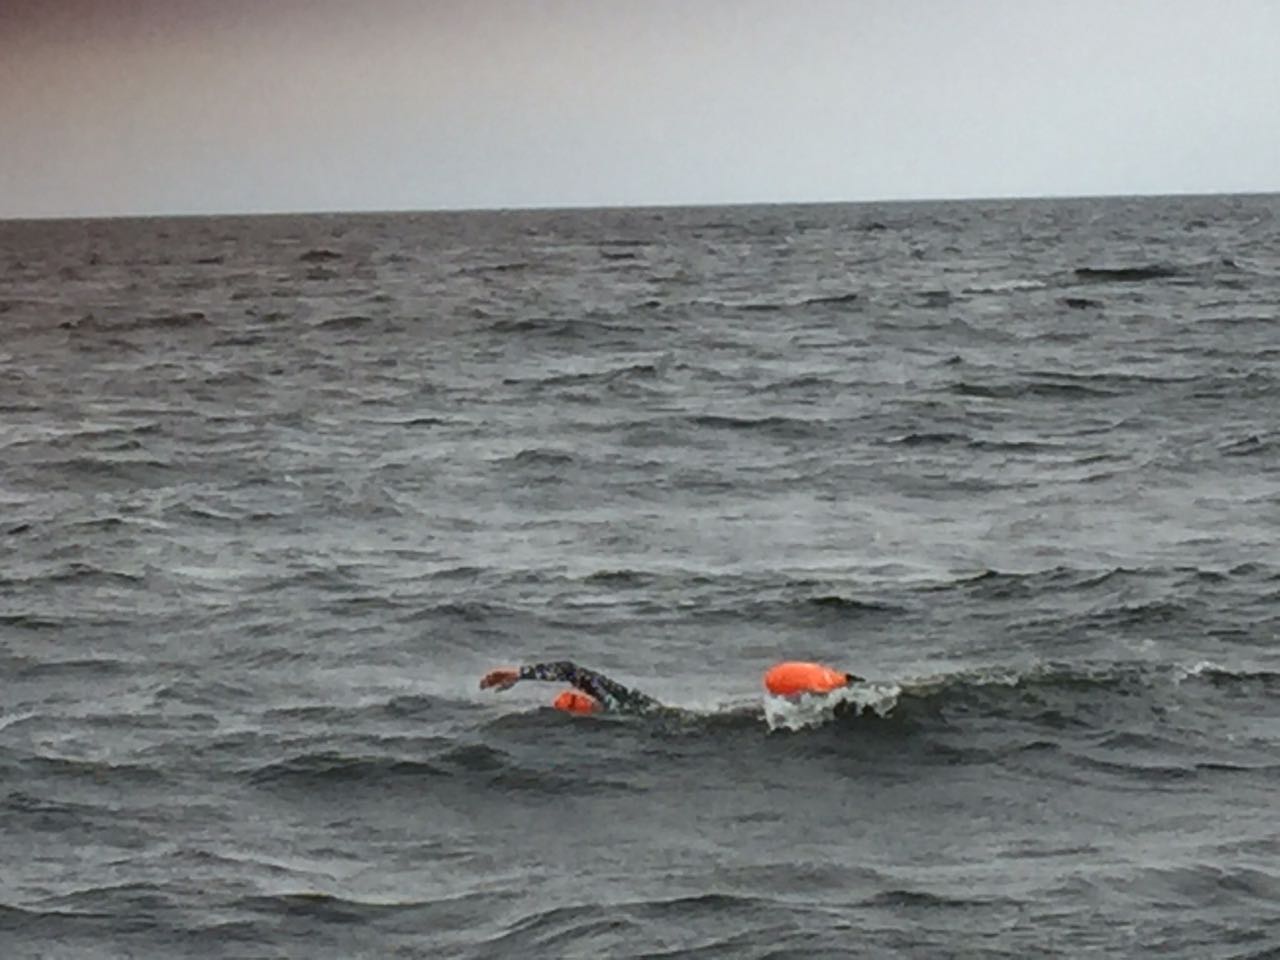 Фото Юрист из Германии намерен переплыть 50-километровую дистанцию на Байкале